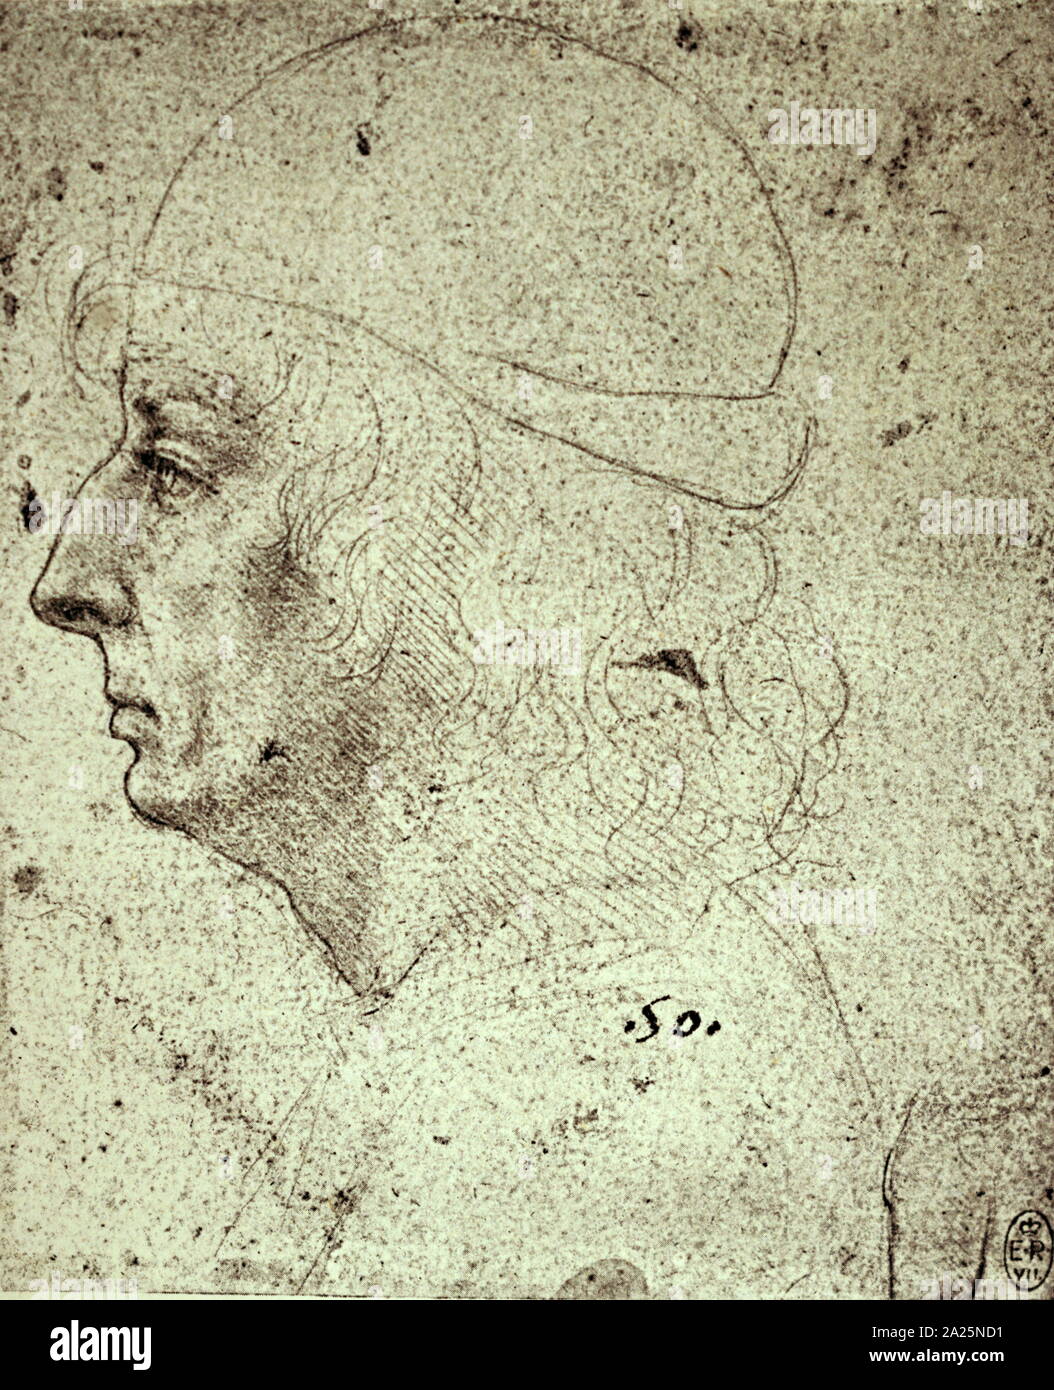 Studio di un uomo di Leonardo da Vinci. Leonardo di ser Piero da Vinci (1452-1519) un polymath italiana del Rinascimento. Foto Stock